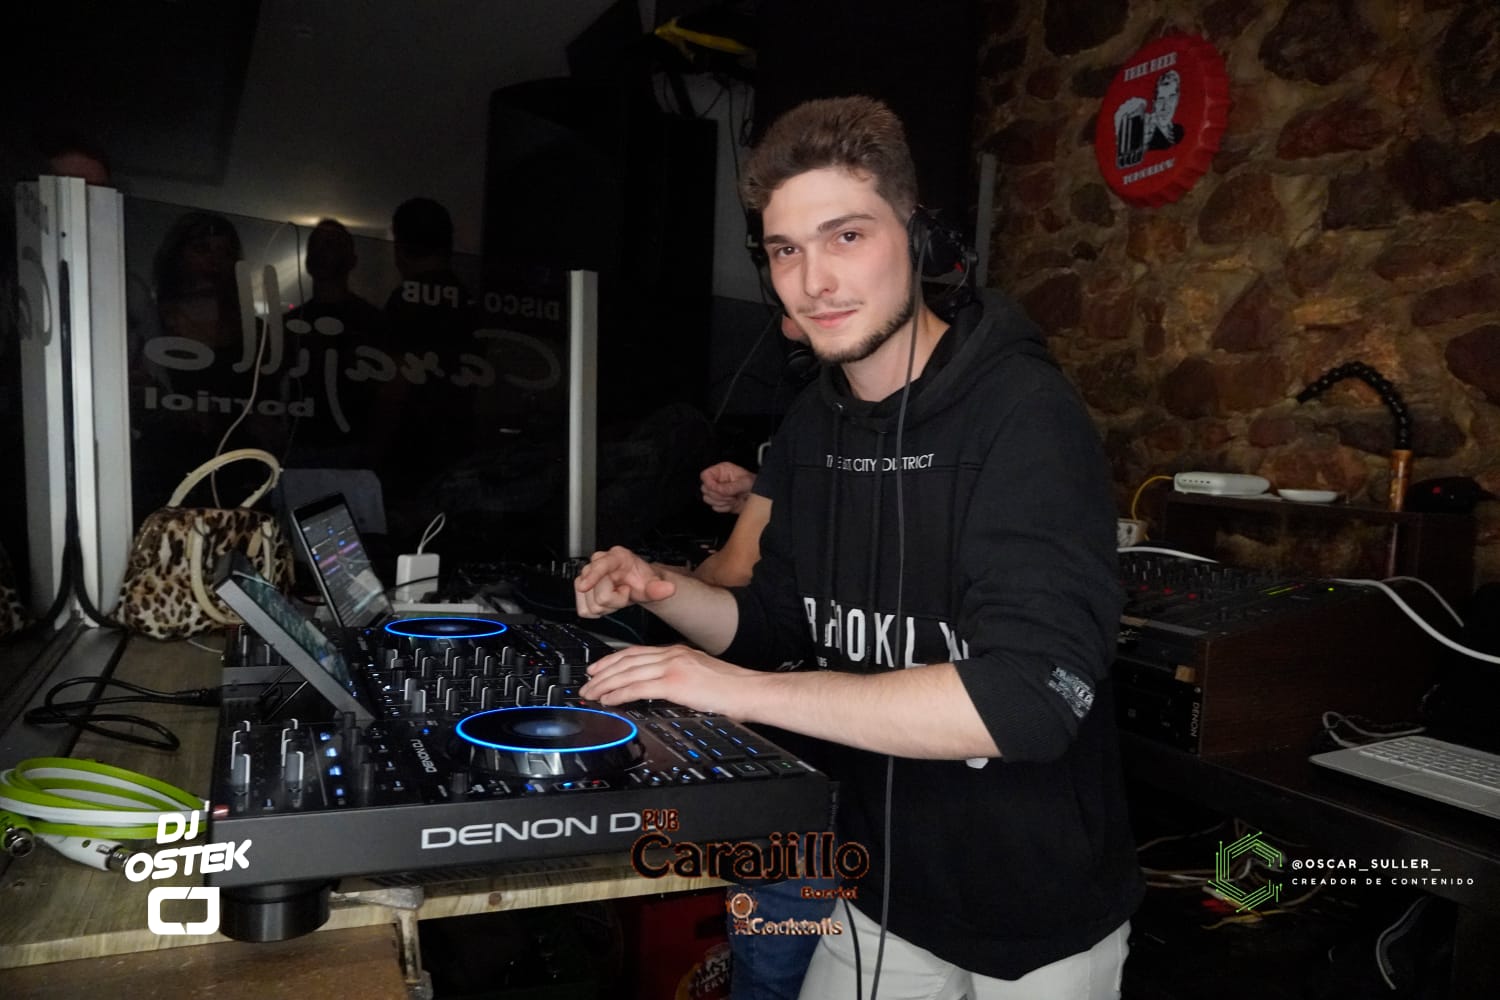 Parlem amb Óscar Trujillo Falomir, «DJ Ostek»